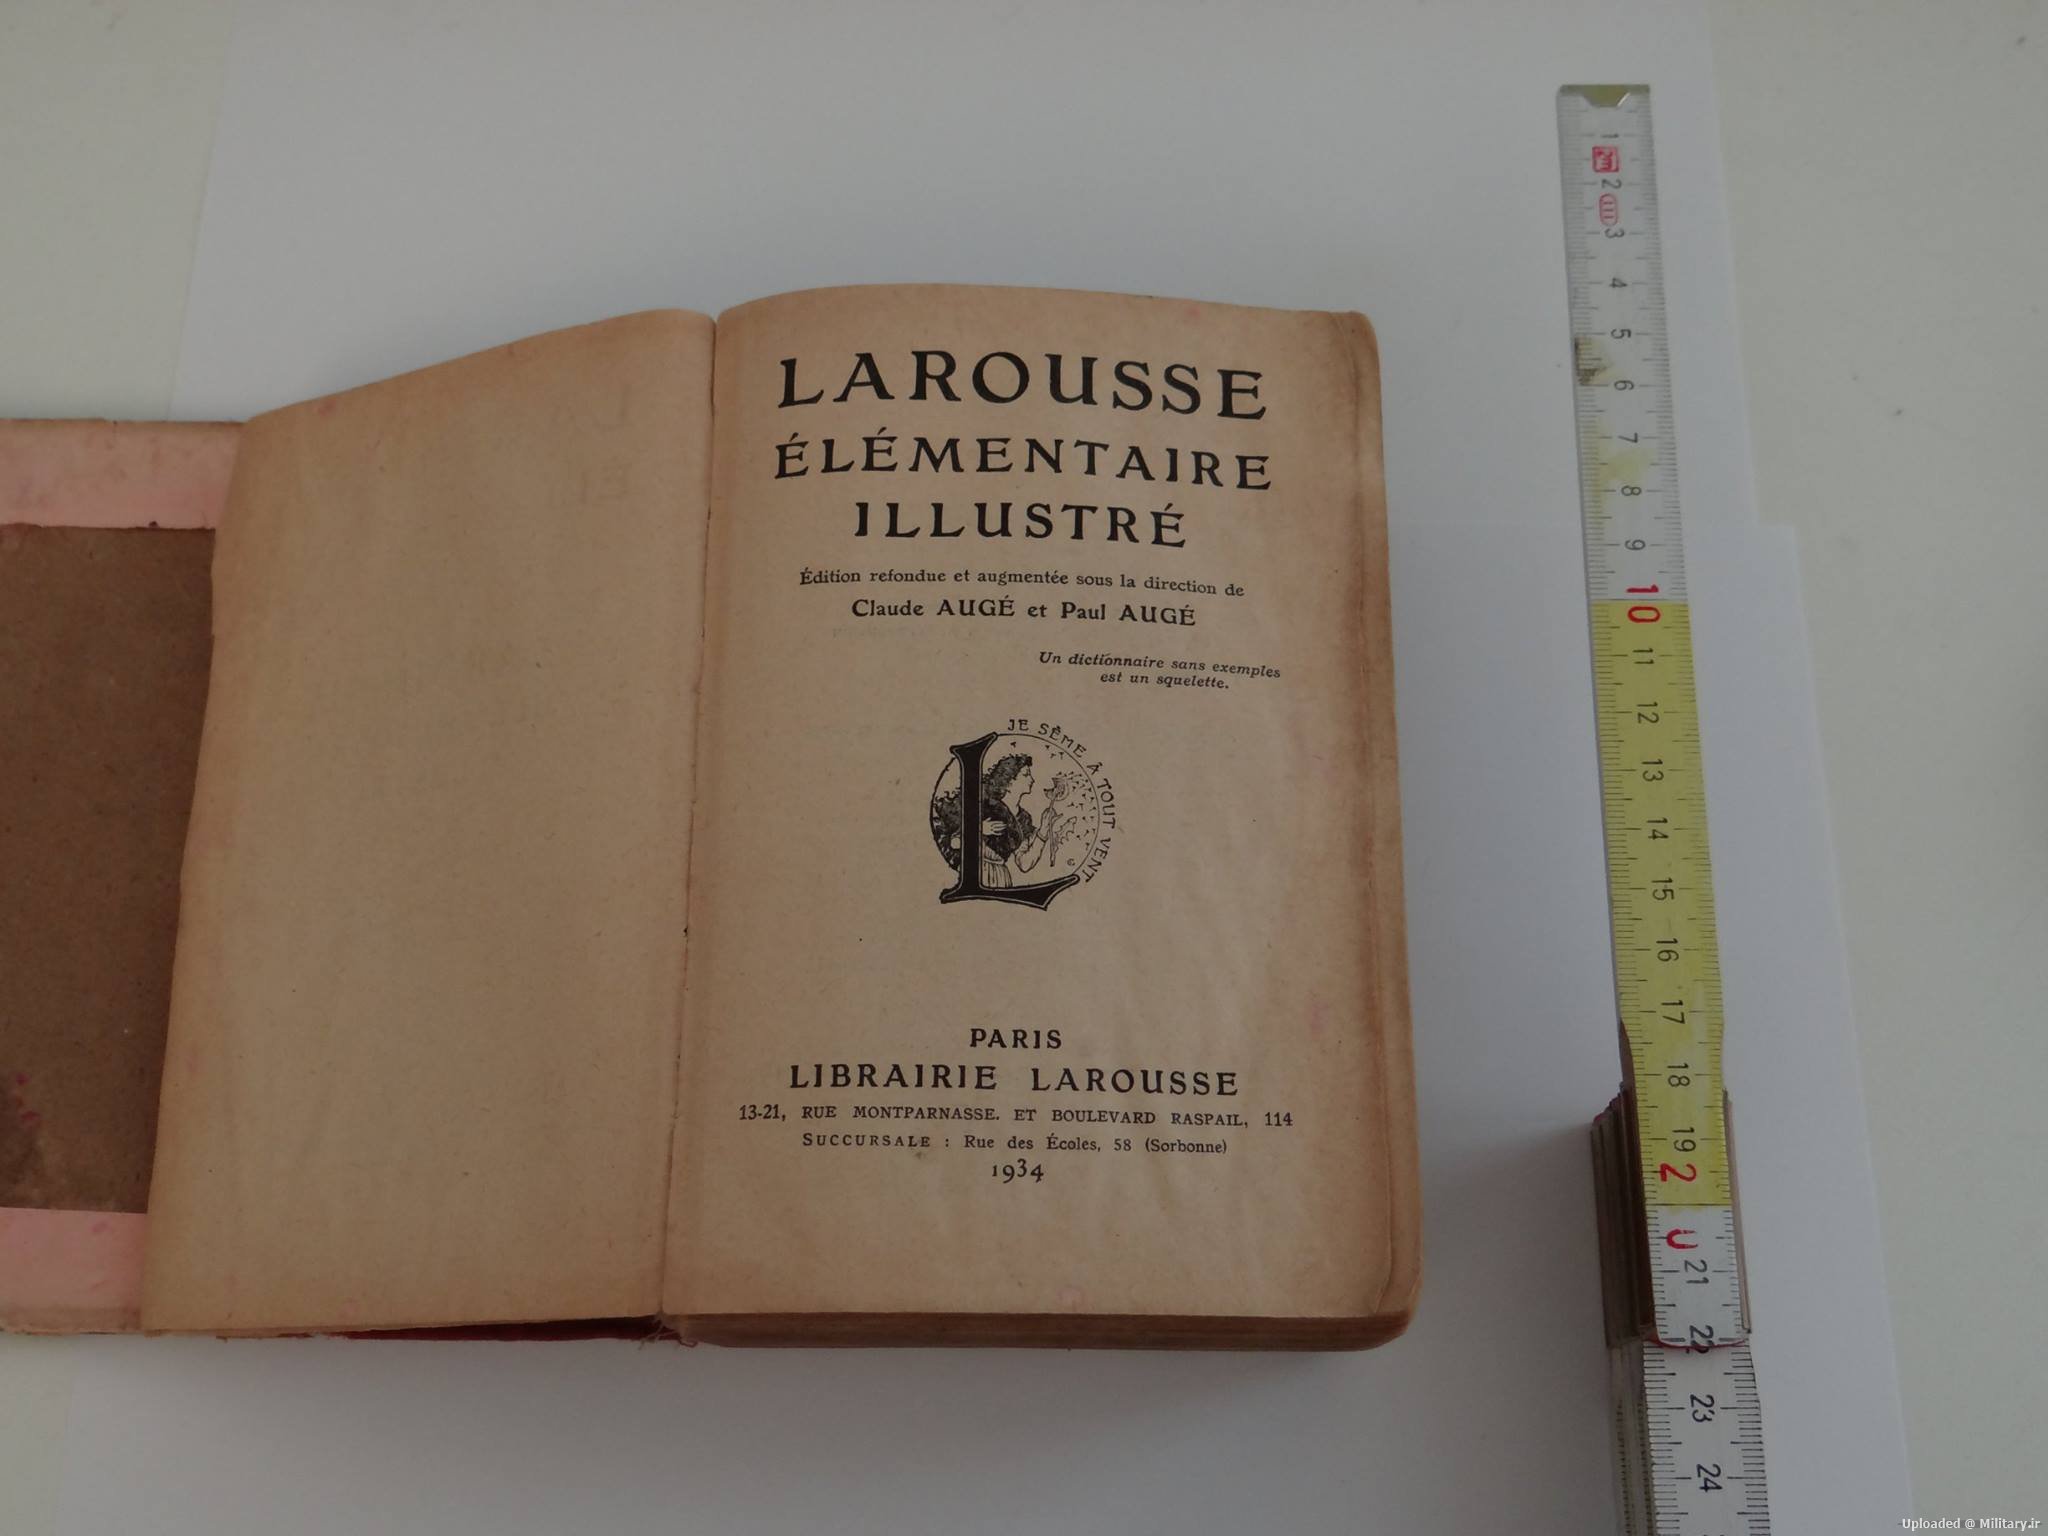 Larousse-Illustre-1934.jpg